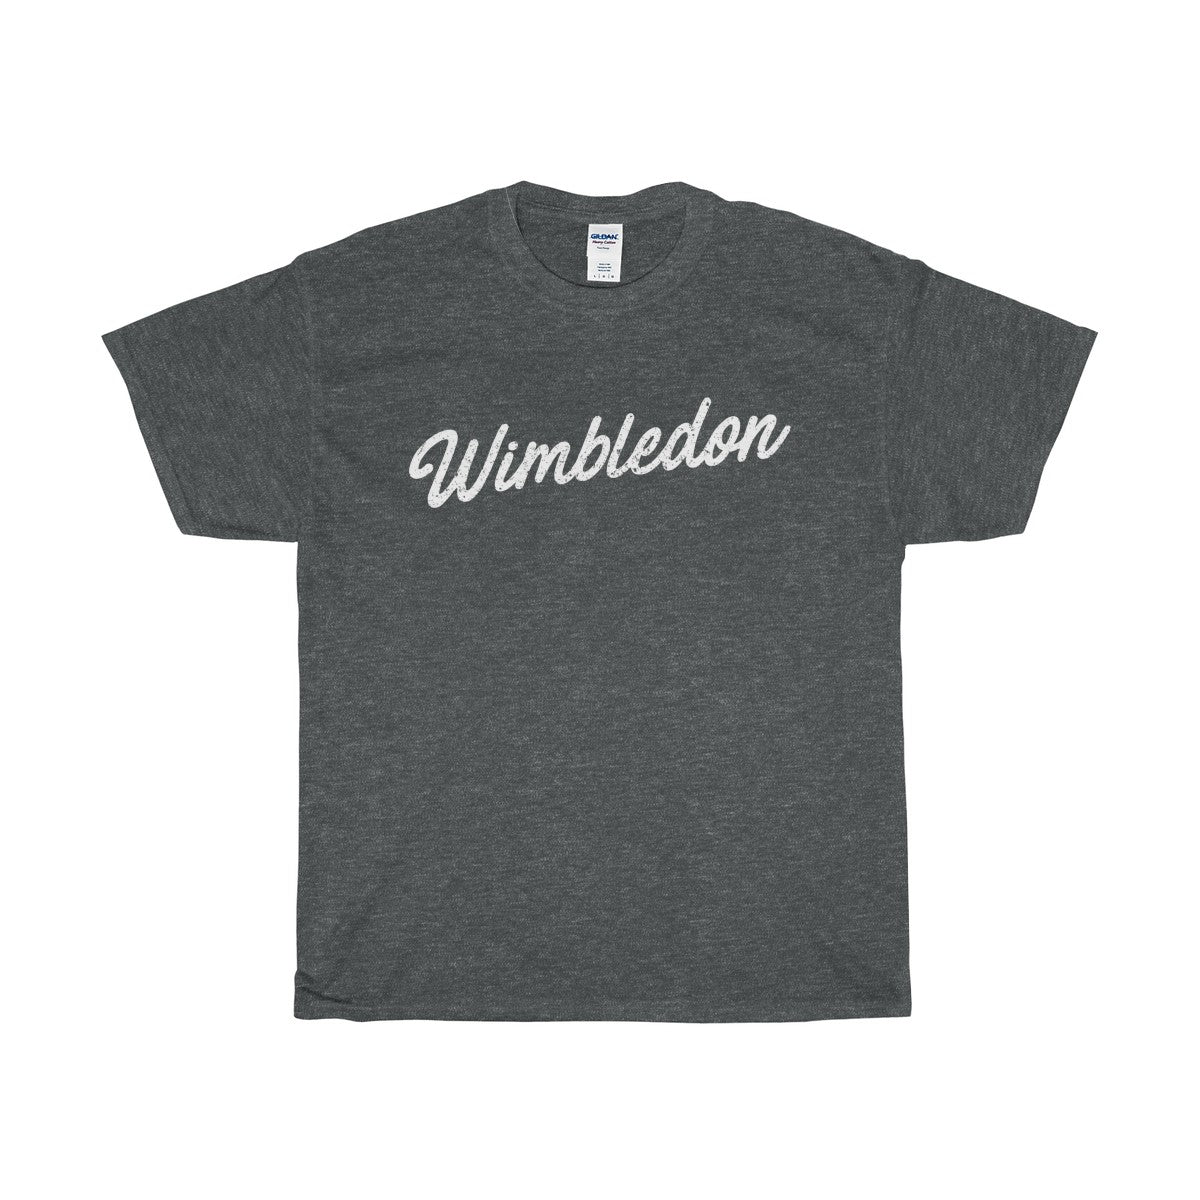 Wimbledon Scripted T-Shirt